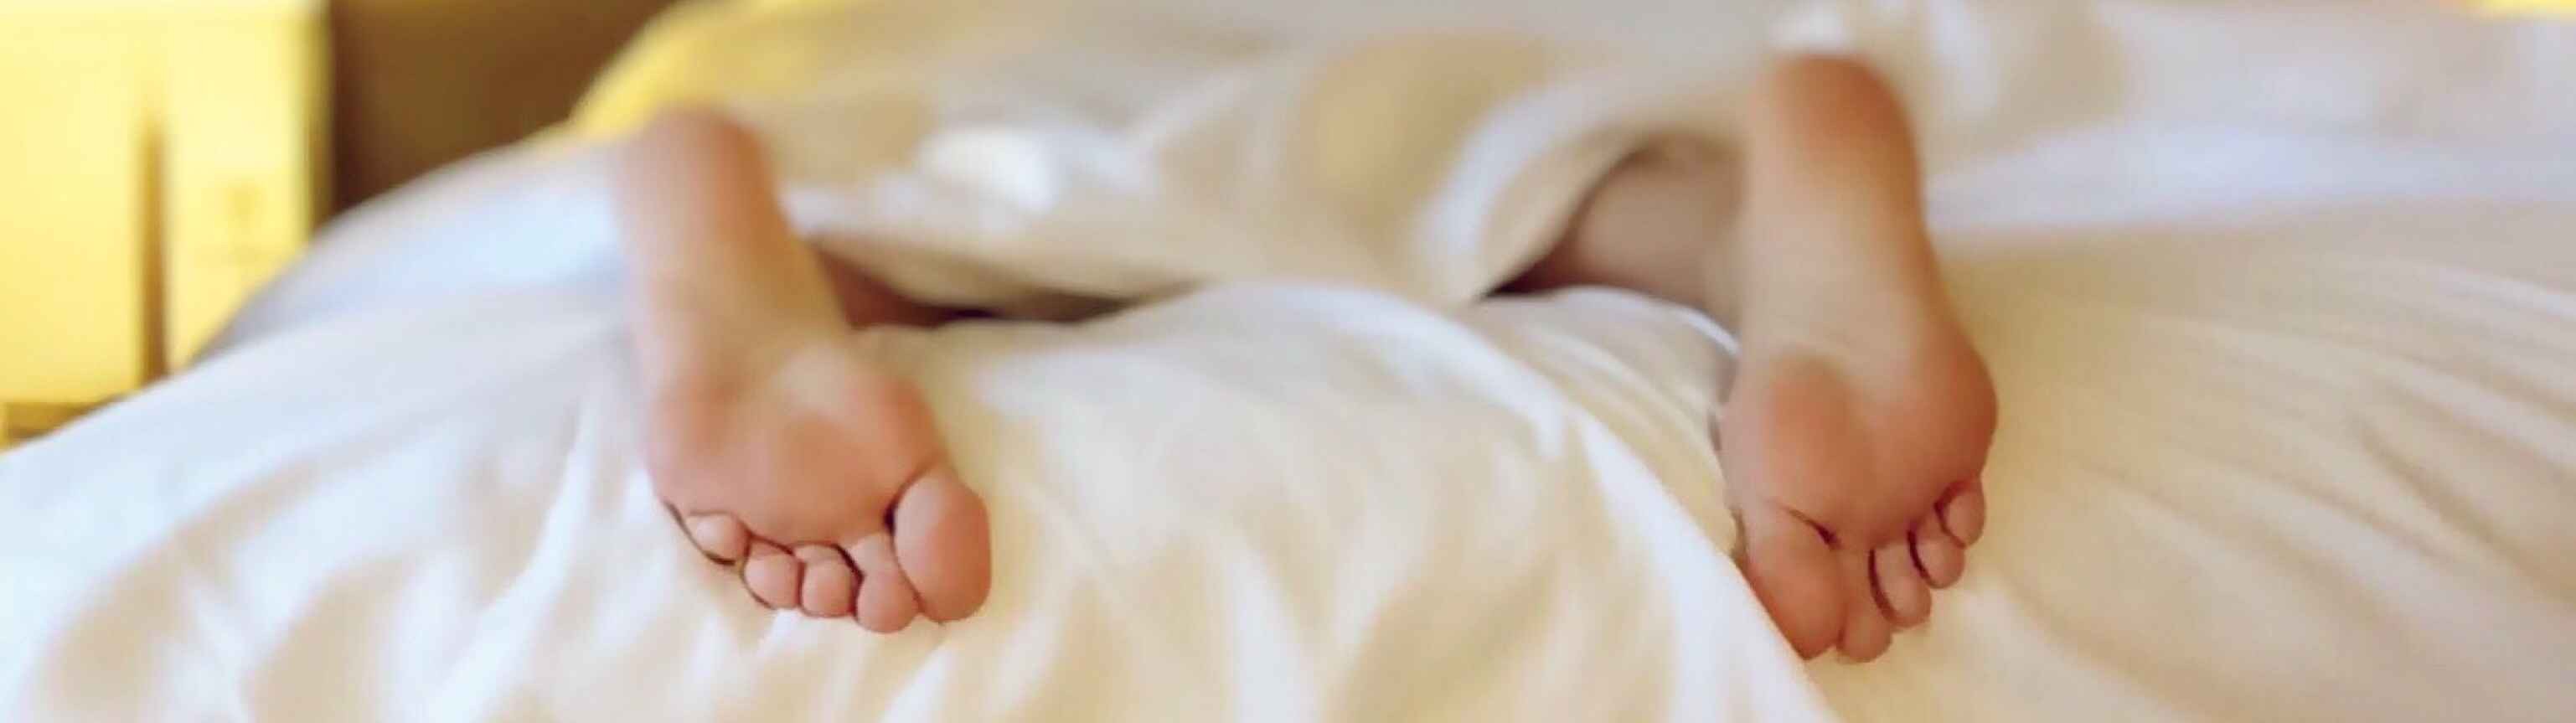 Dormir menos de ocho horas puede producir sobrepeso en adolescentes